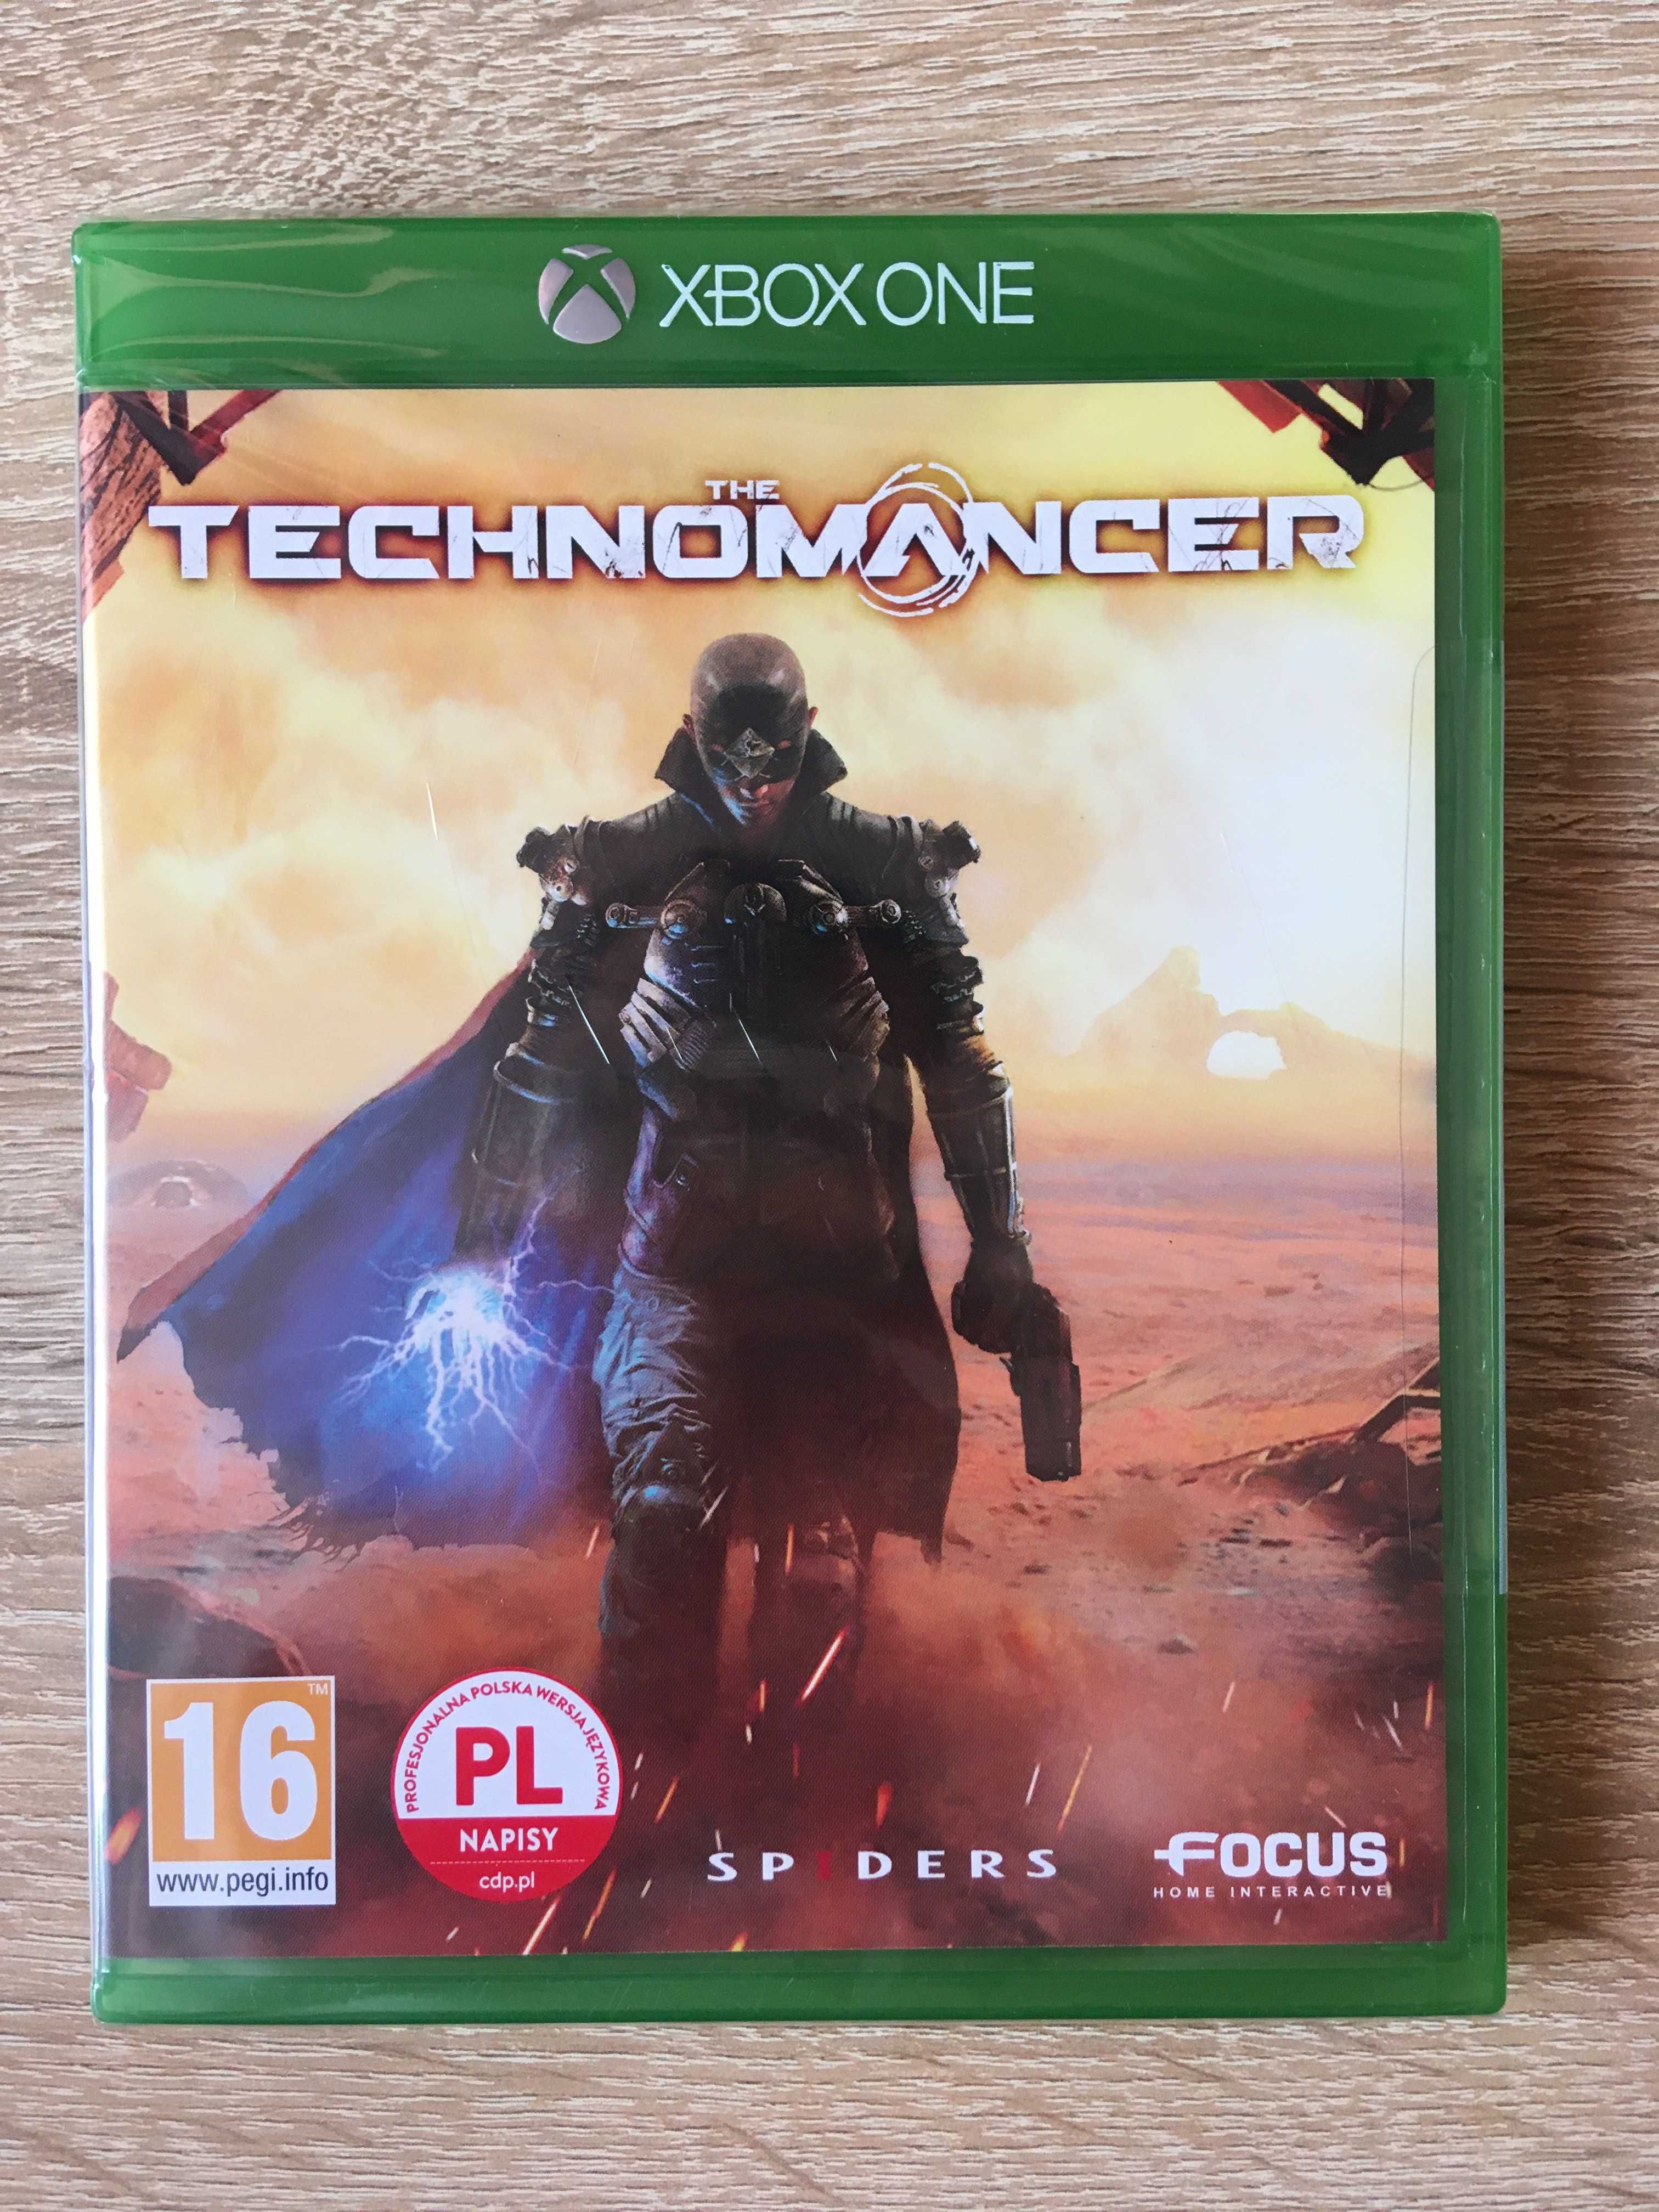 The Technomancer - Xbox One - Spiders - PL - NOWA, FOLIA